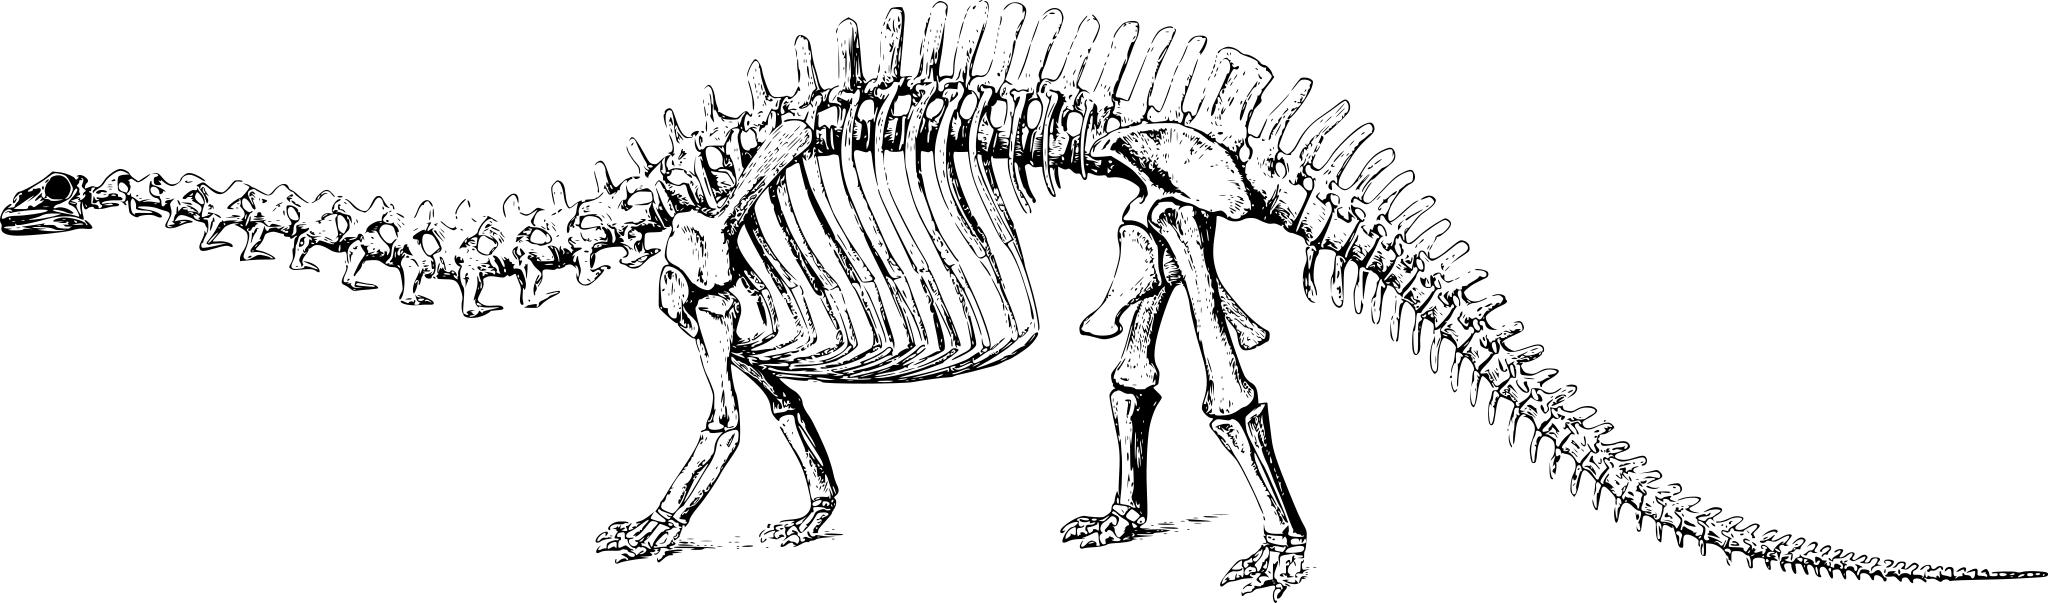 Скелет динозавра на прозрачном фоне